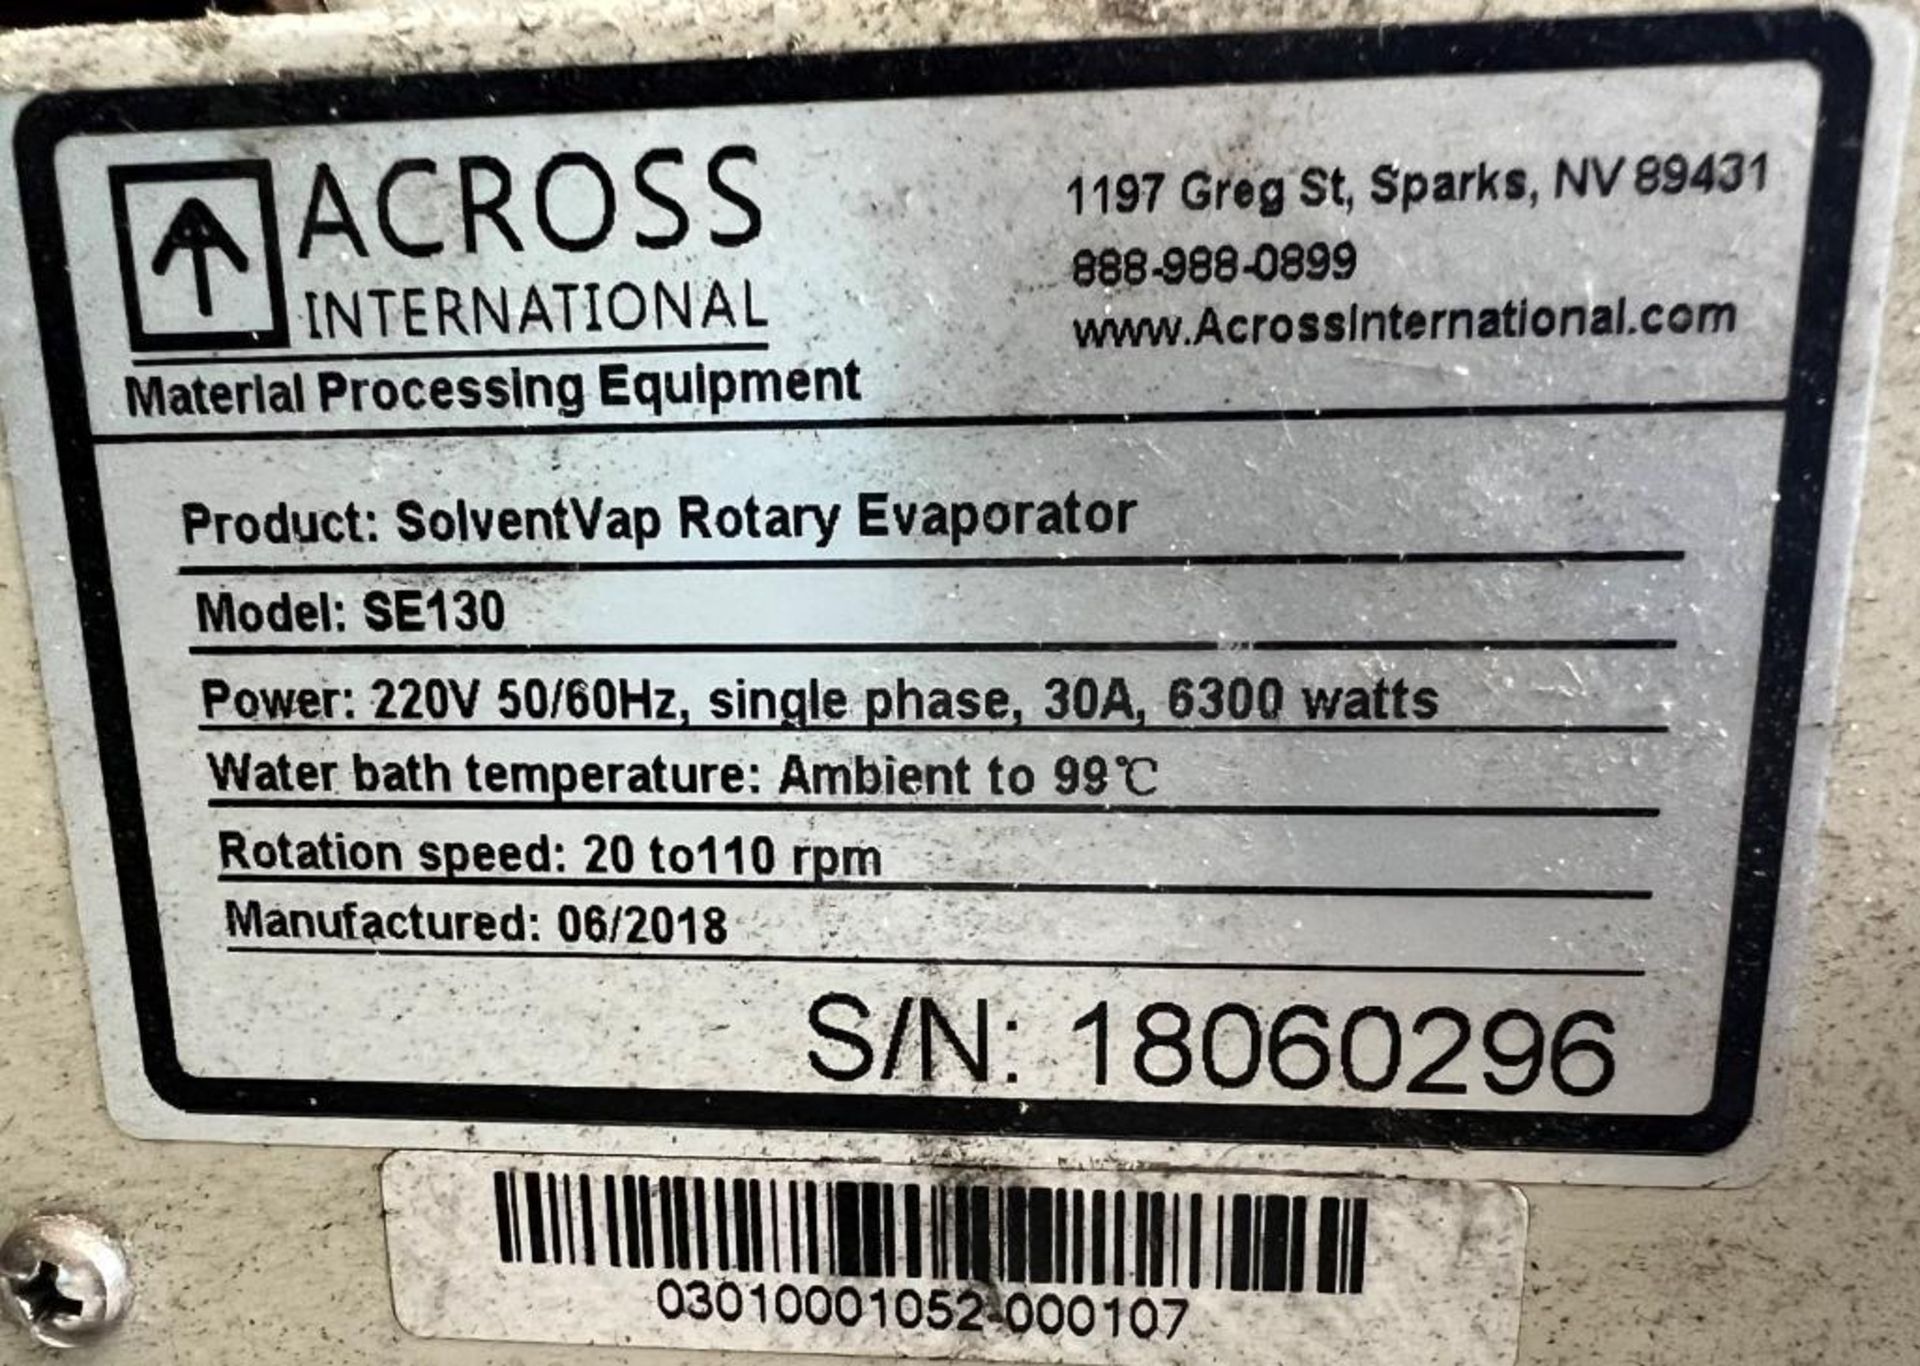 Across International SolventVap Rotary Evaporator, Model SE130, Serial# 18060296, Built 06/2018. Wit - Image 5 of 5